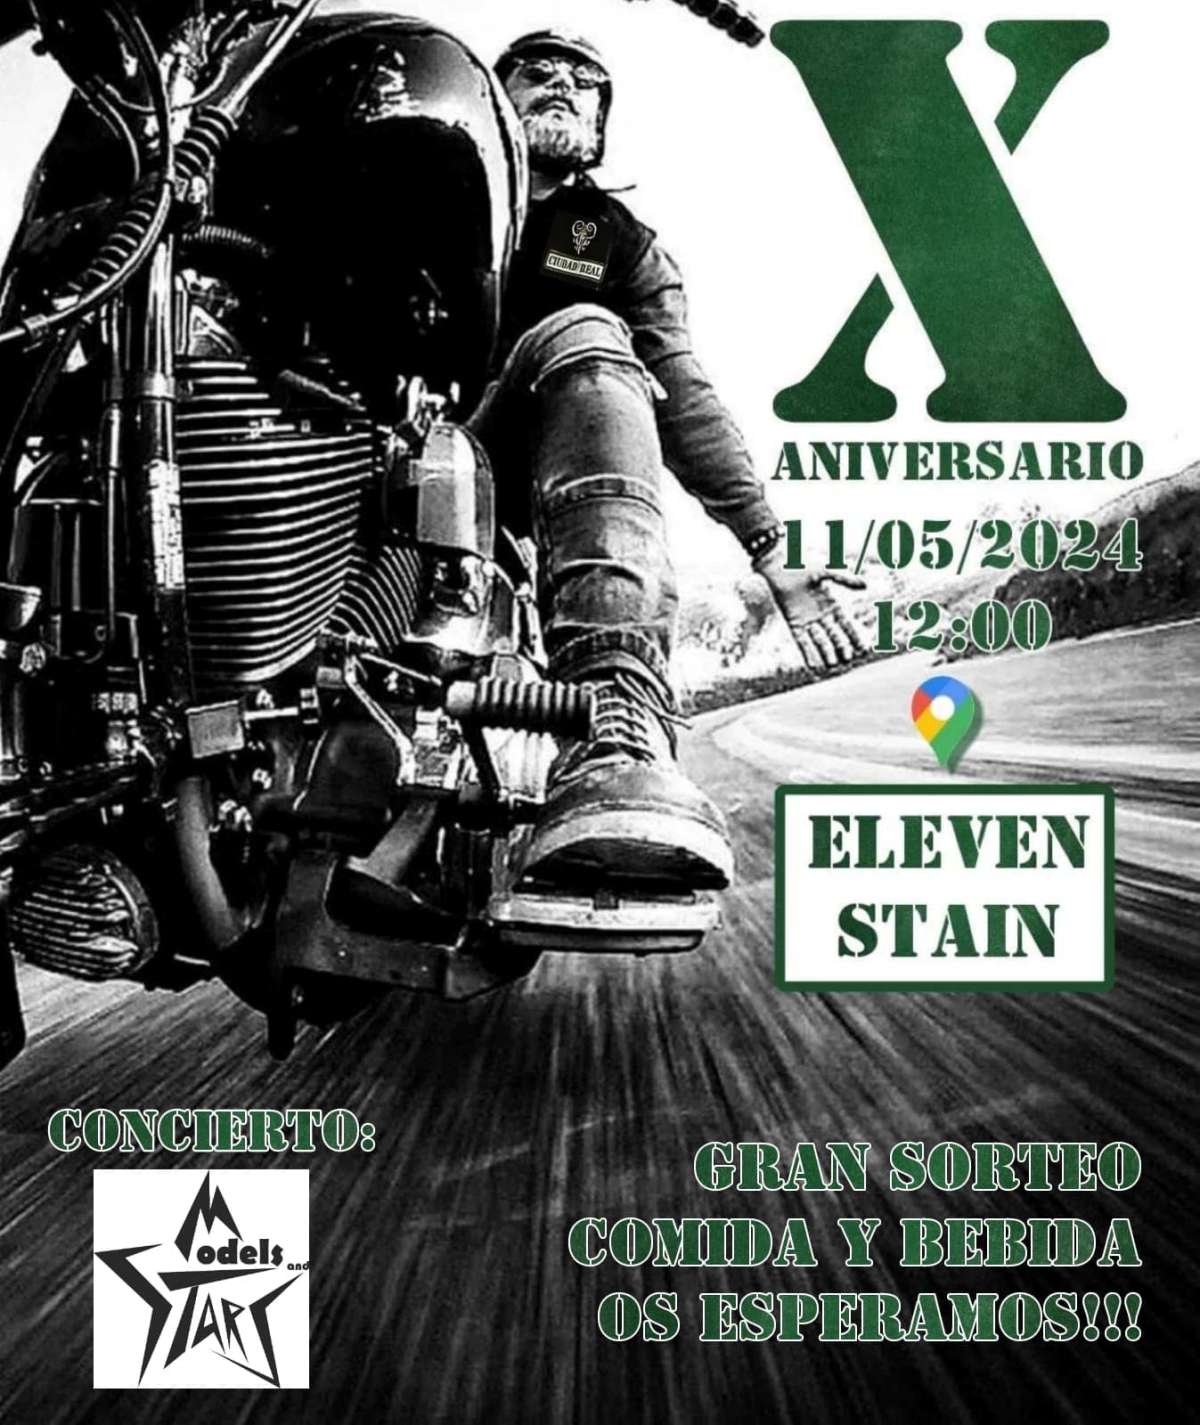 Krakens MC Ciudad Real cumple 10 años y esperan celebrarlo con la llegada de más de 200 motos a Tomelloso